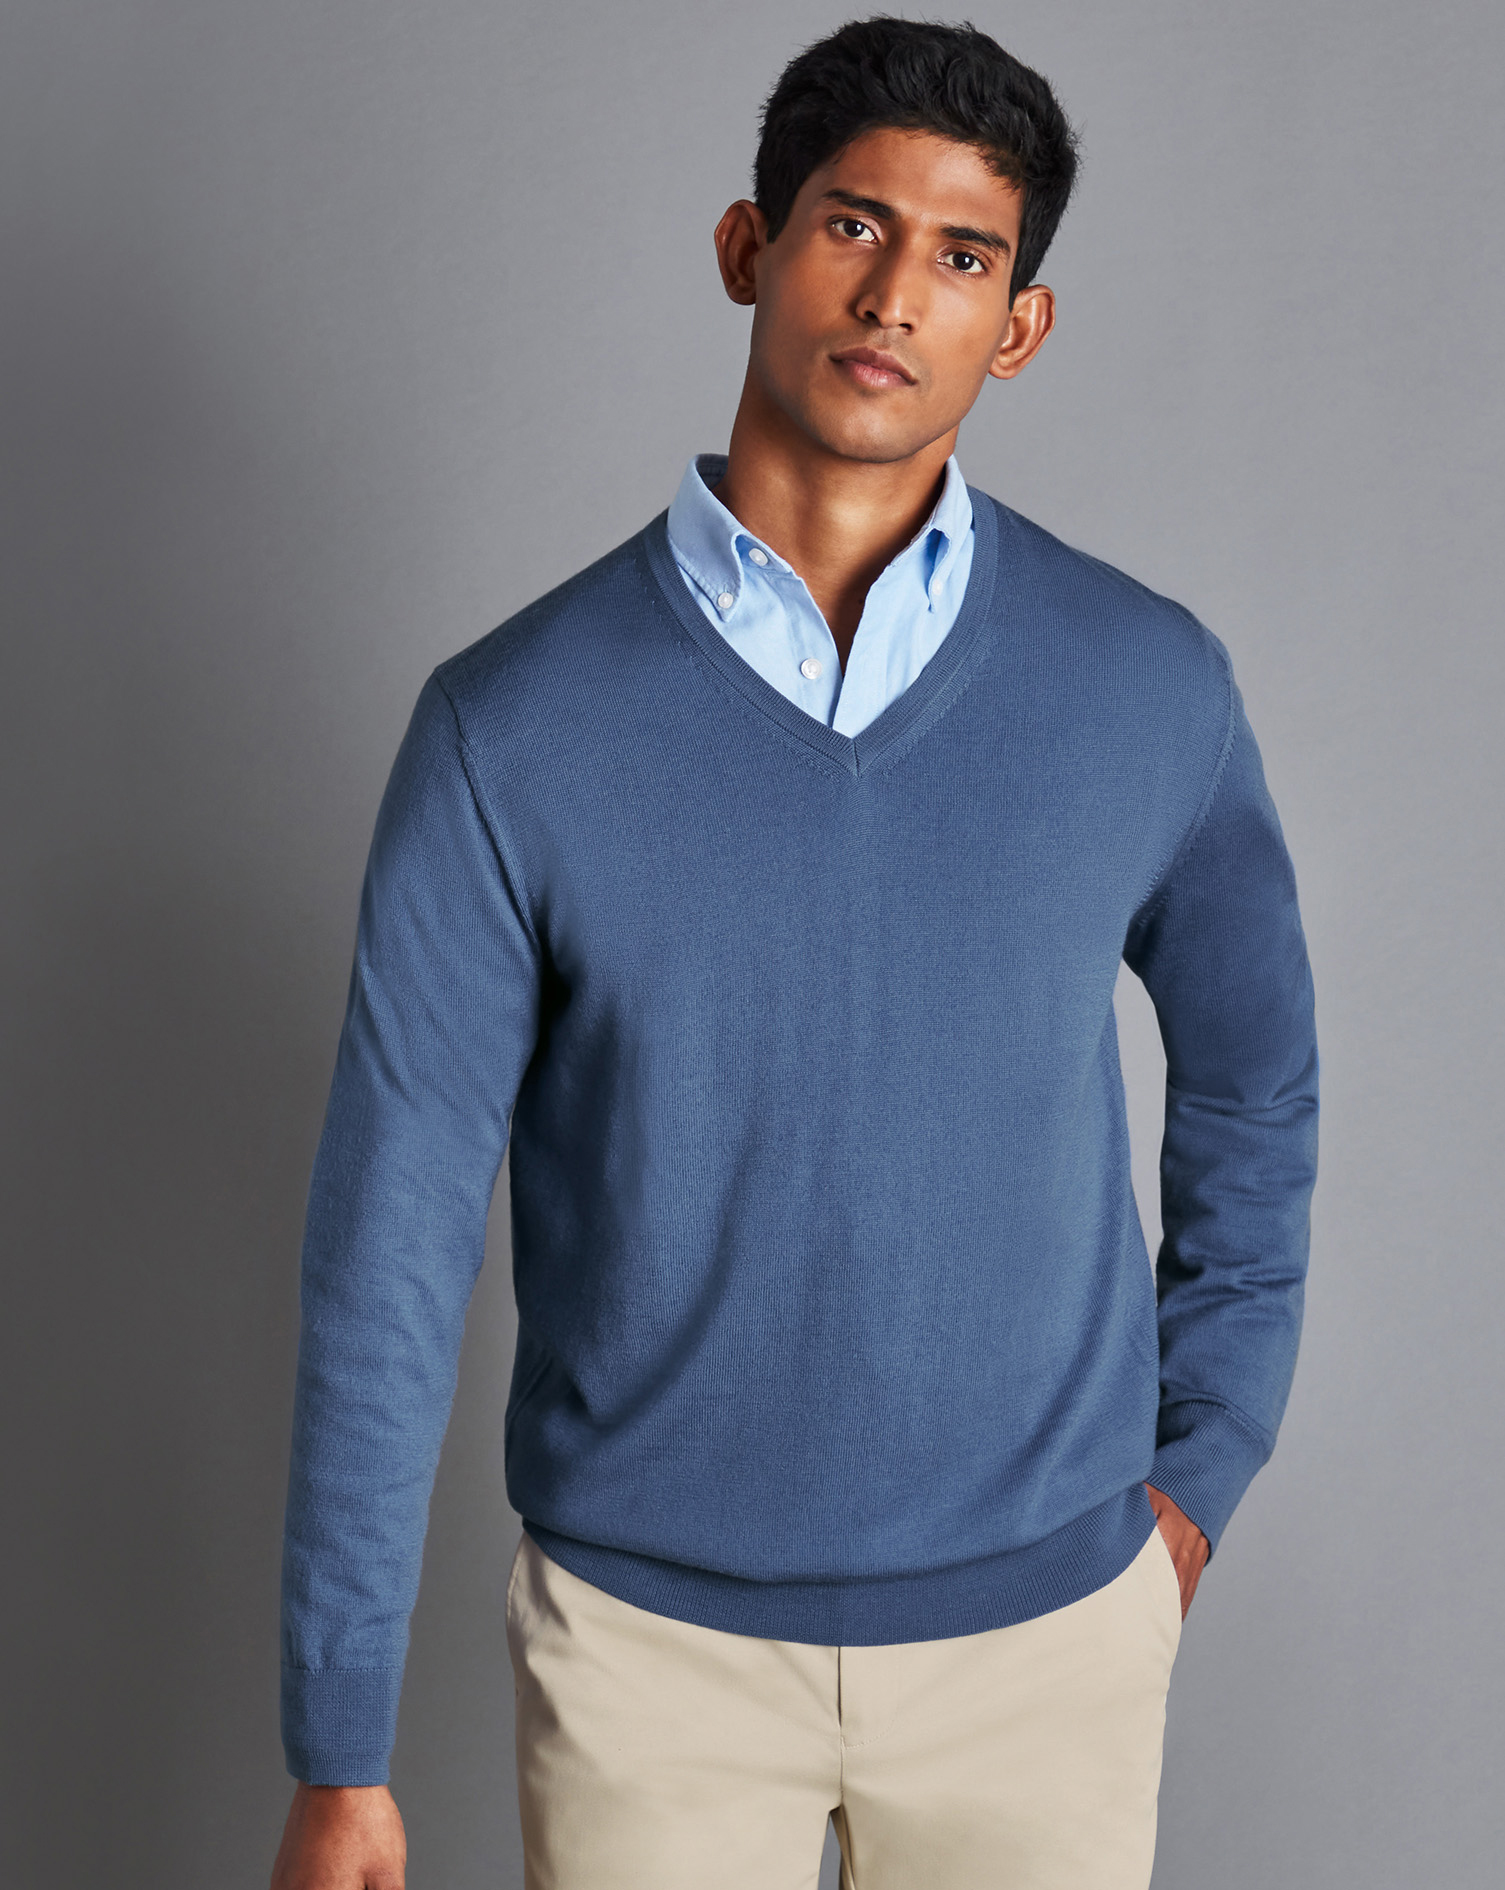 Men's Charles Tyrwhitt Merino V-Neck Sweater - Steel Blue Size Small Wool
